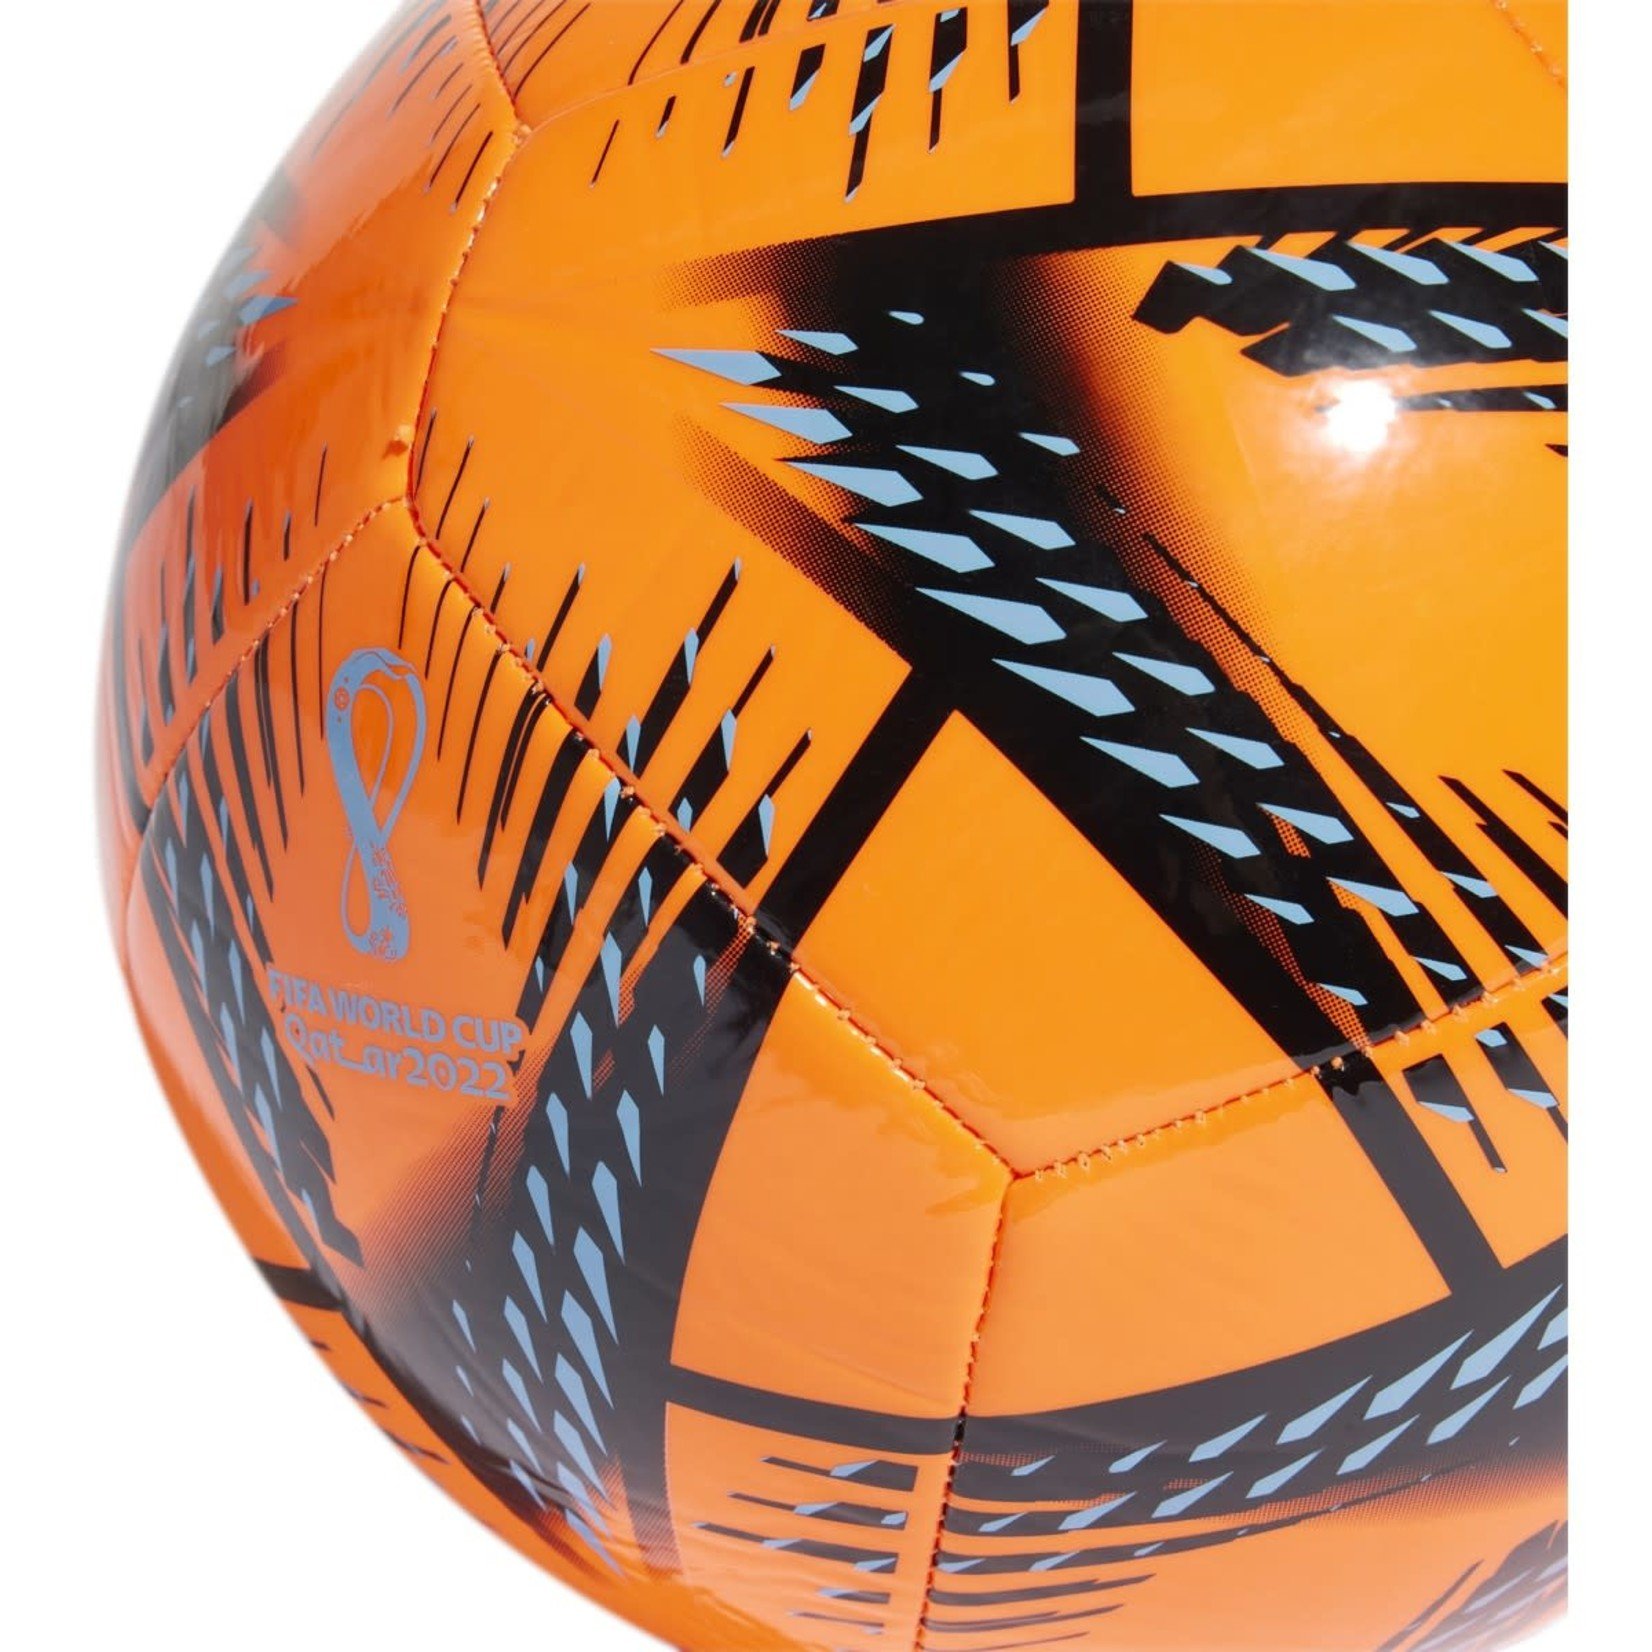 ADIDAS WORLD CUP 2022 AL RIHLA CLUB BALL (ORANGE)